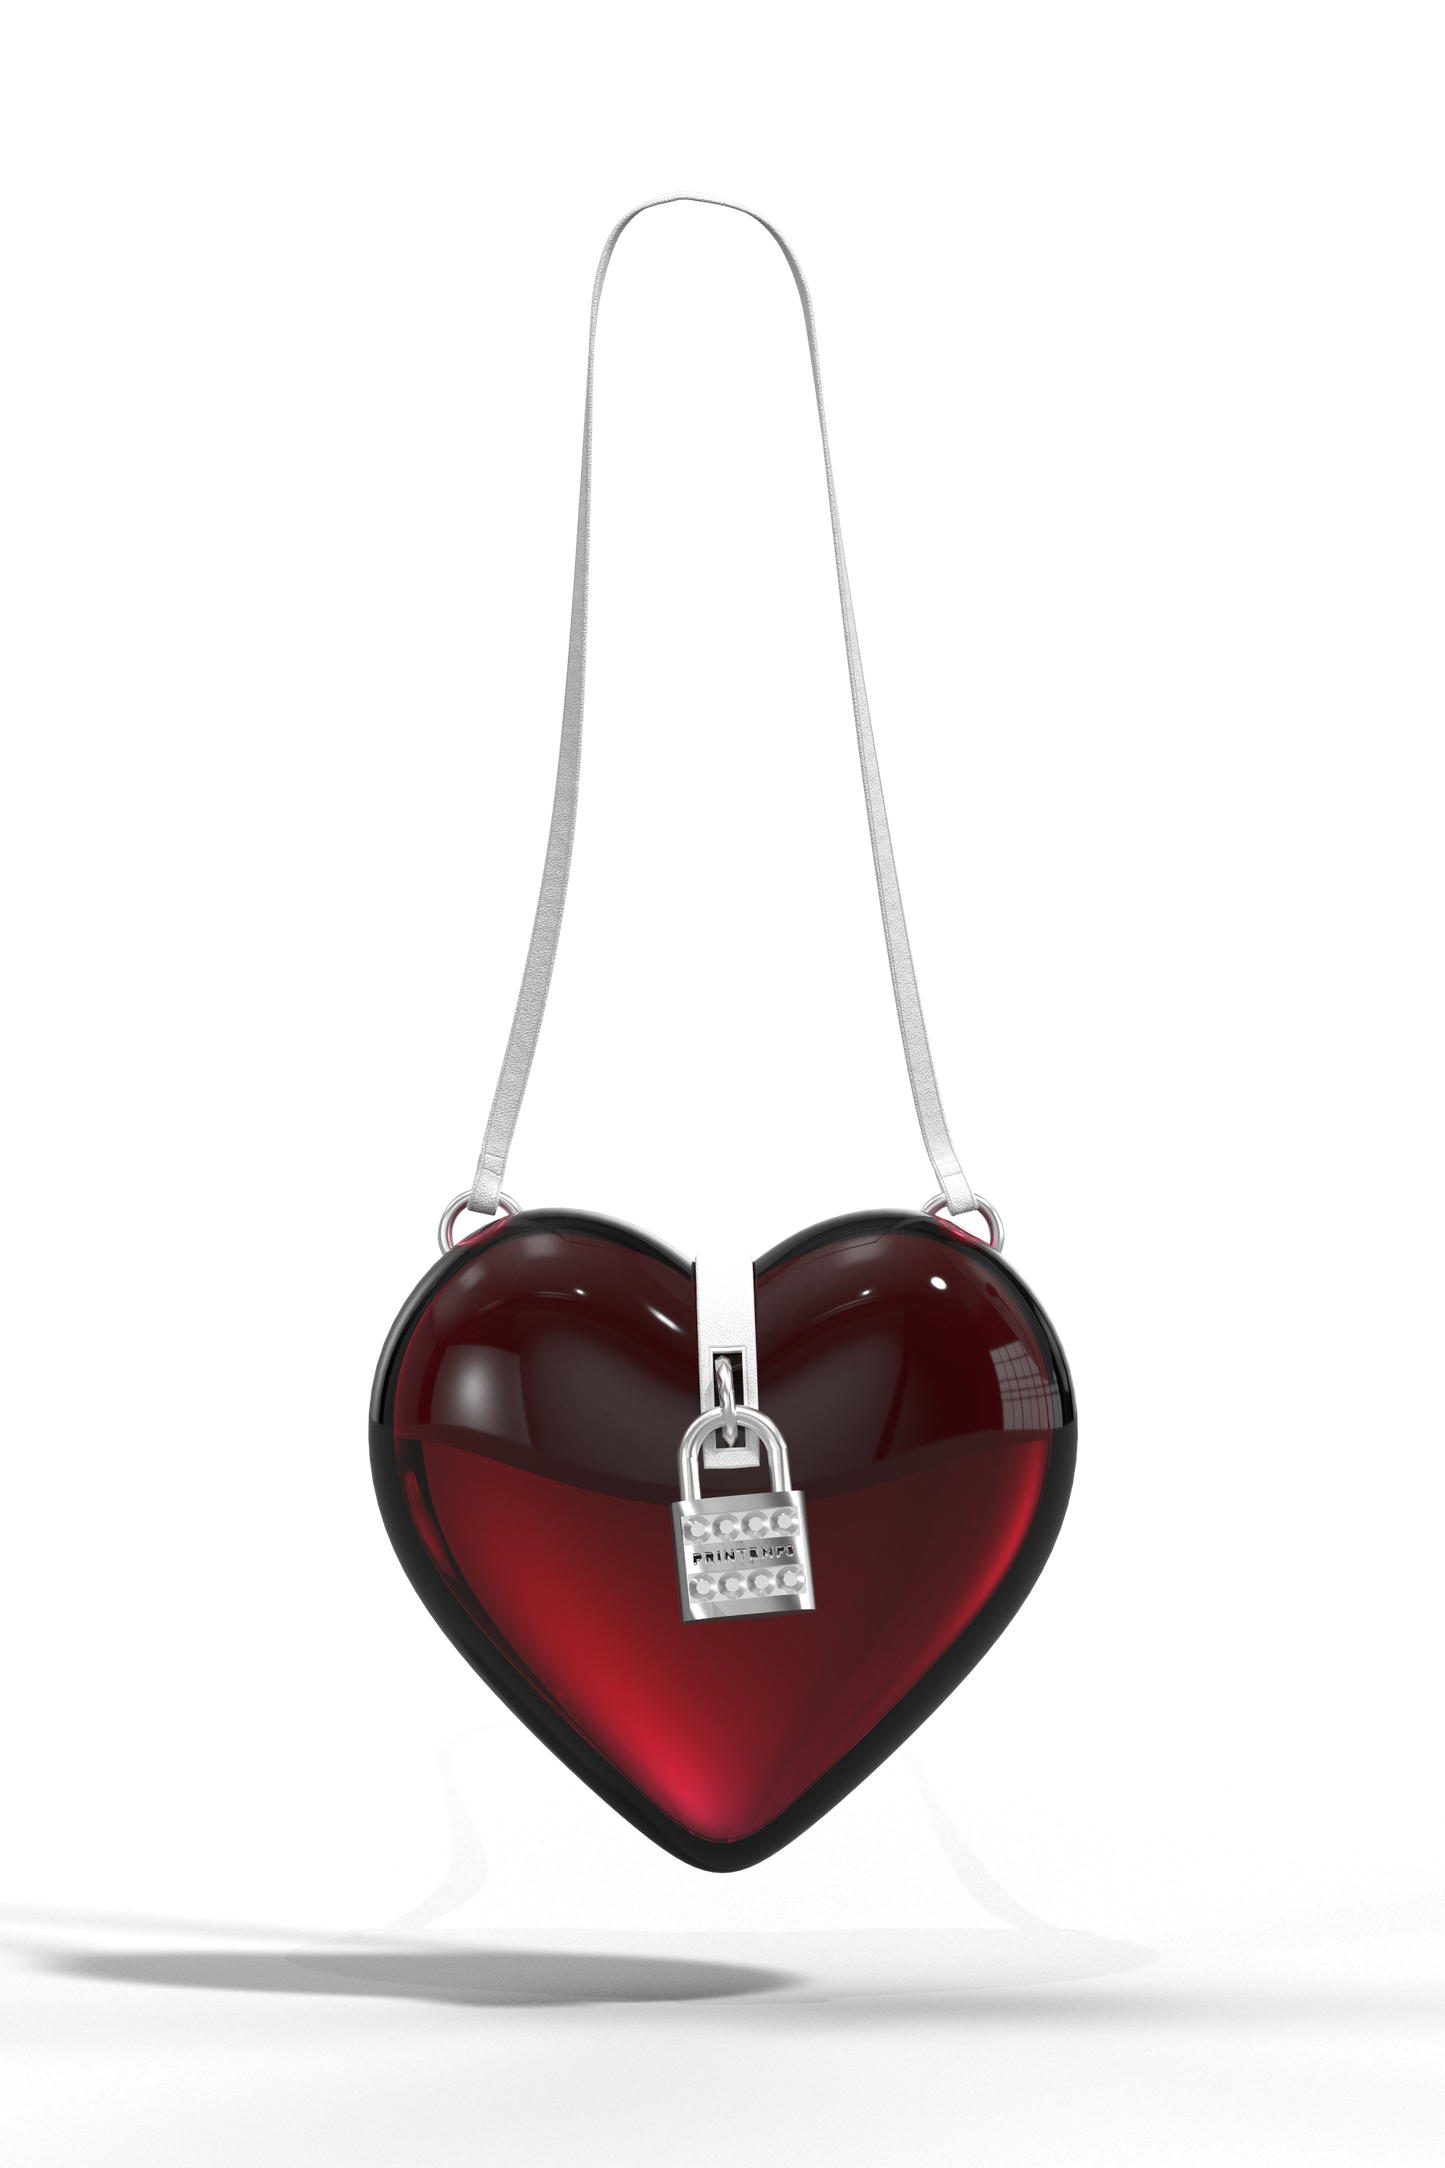  | Heart handbag